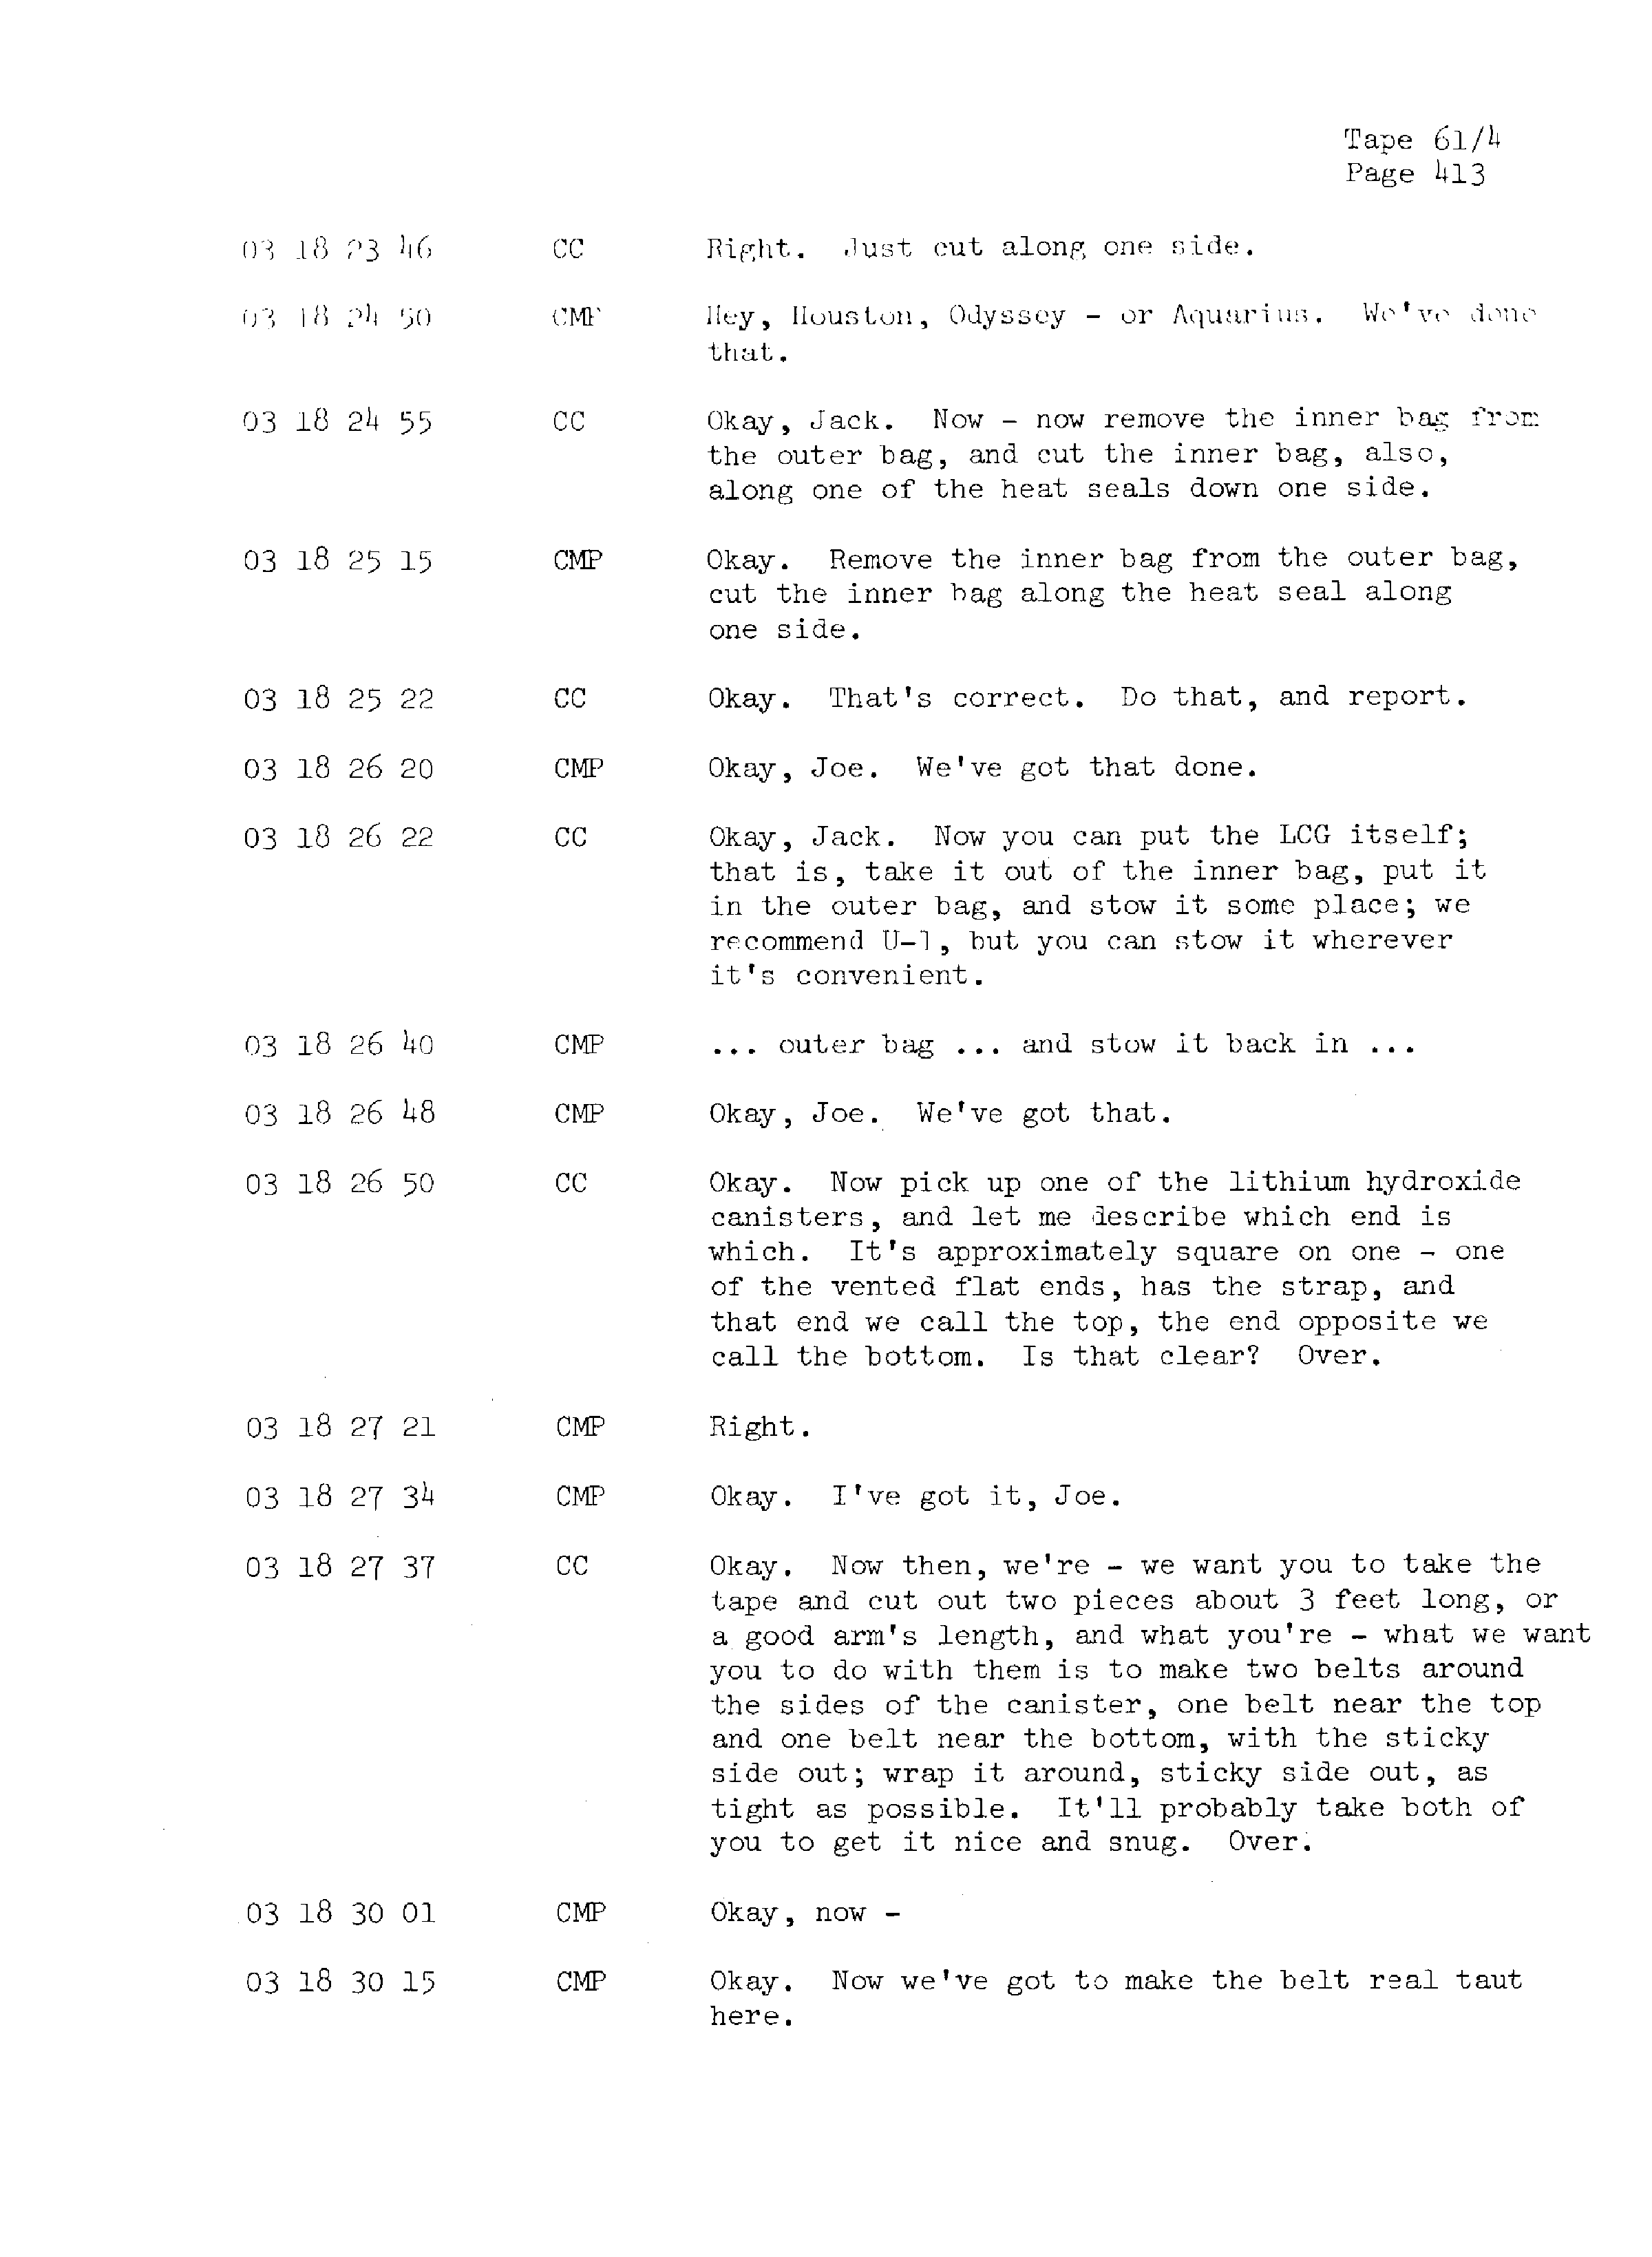 Page 420 of Apollo 13’s original transcript